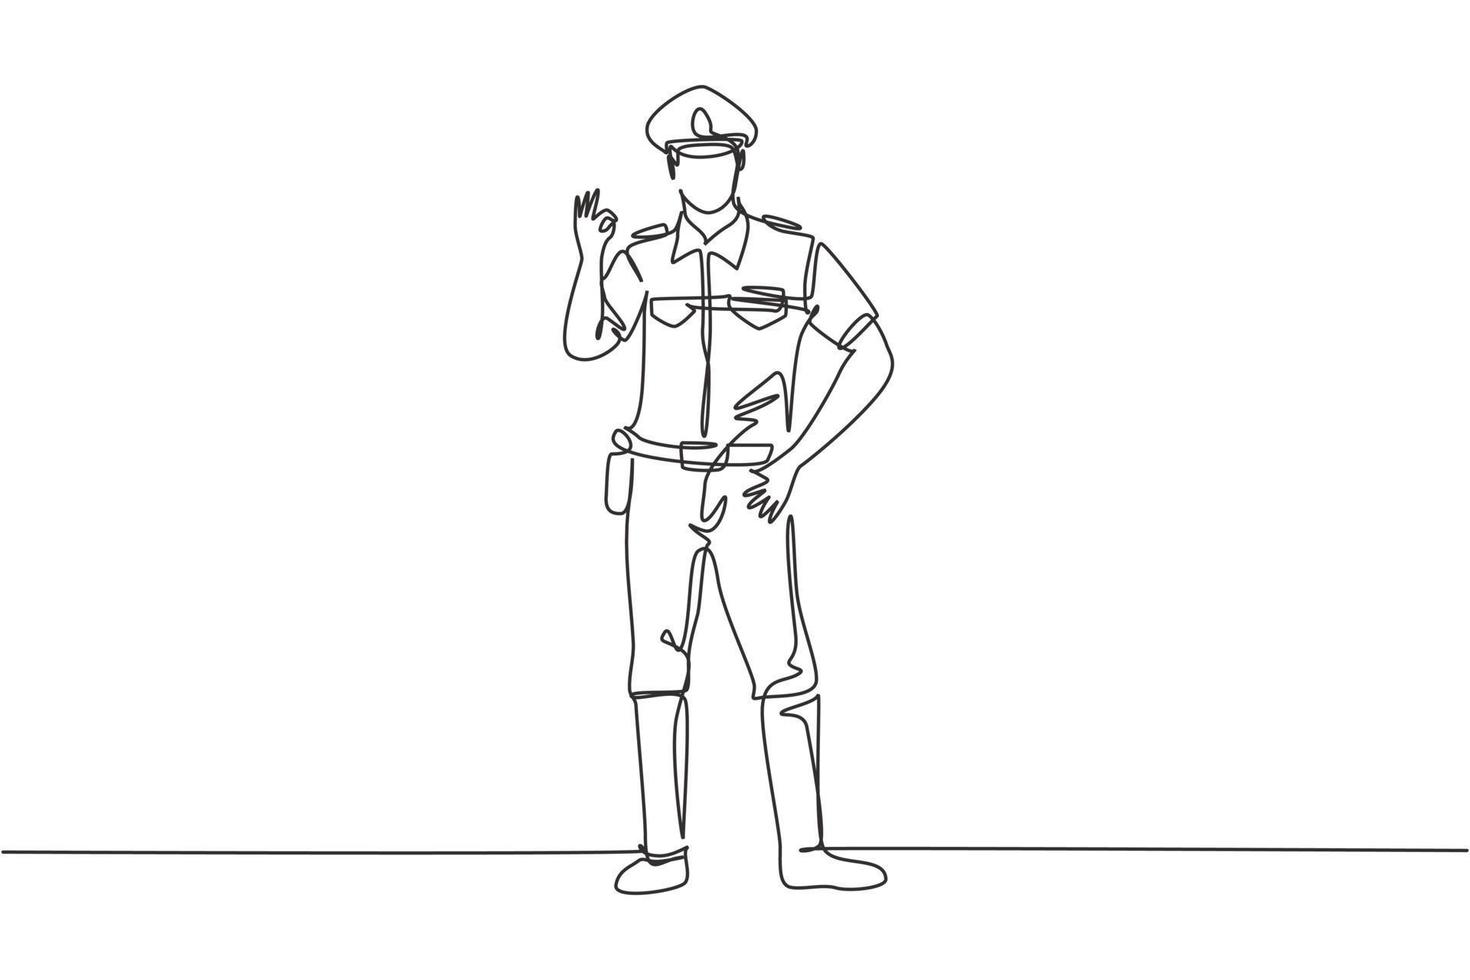 poliziotto di disegno continuo a una linea in piedi con il gesto va bene e l'uniforme completa lavora per controllare il traffico veicolare sull'autostrada. attesa di pattuglia. illustrazione grafica vettoriale di disegno di disegno a linea singola